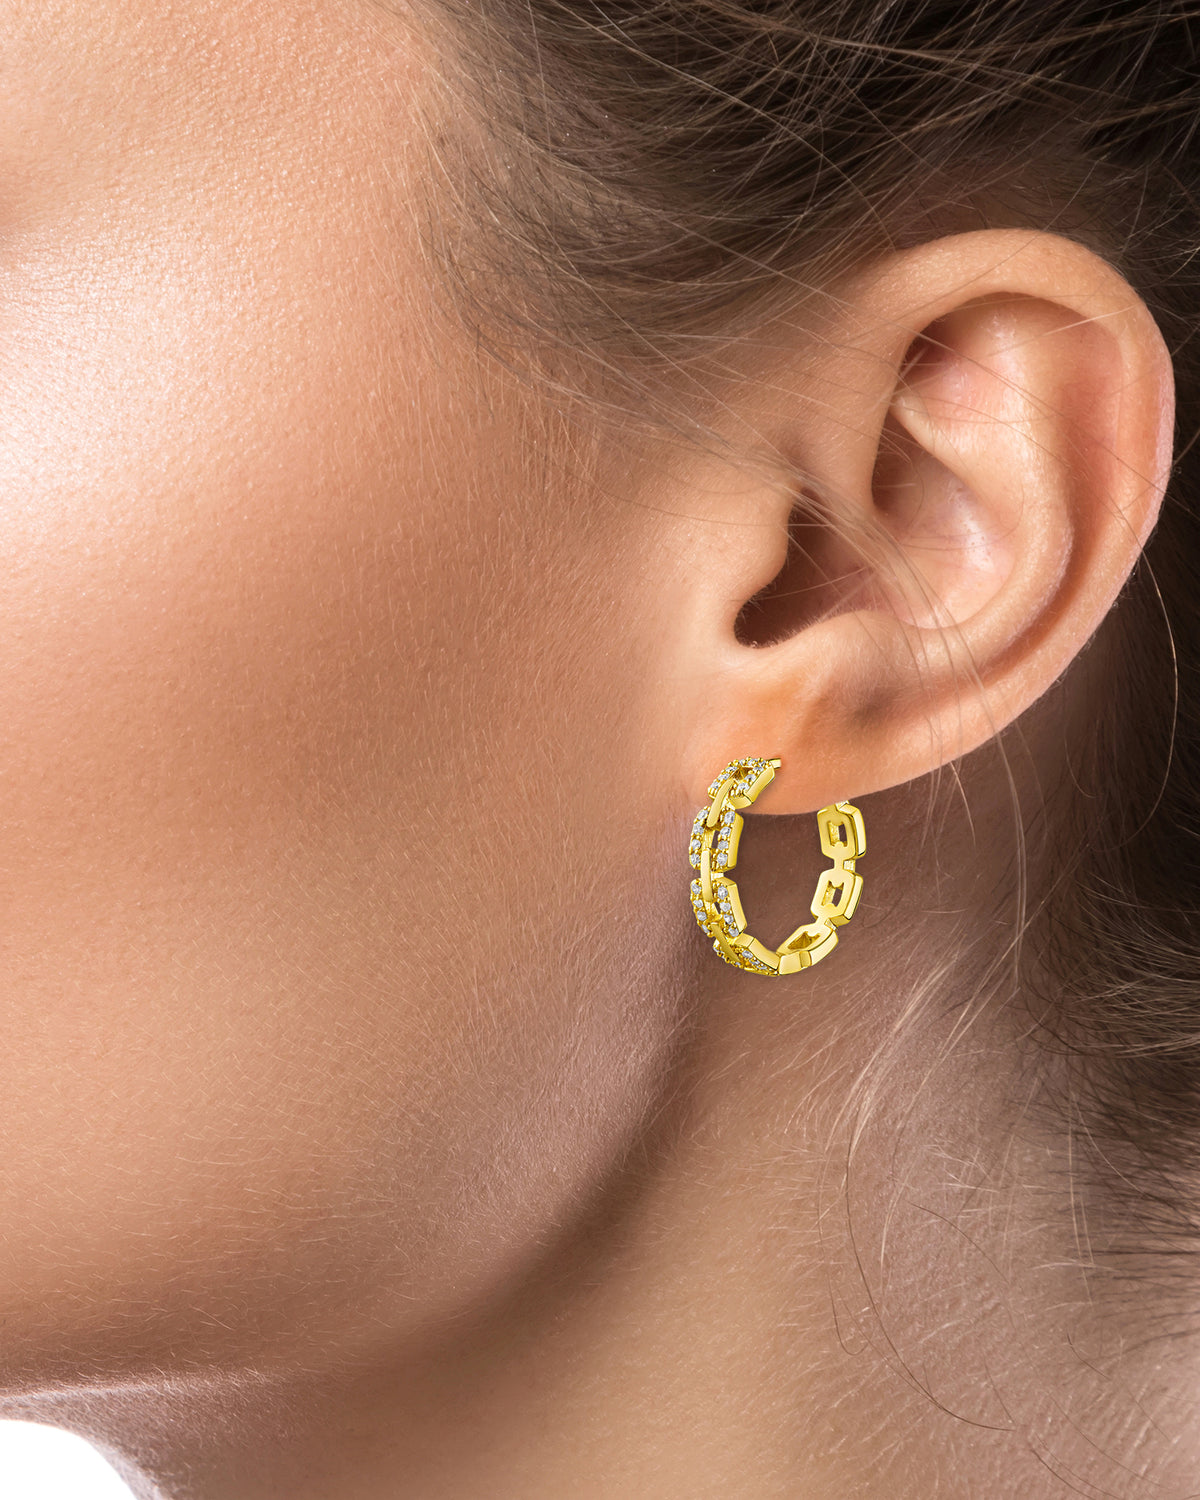 Pave Delicate Link Hoop Earrings